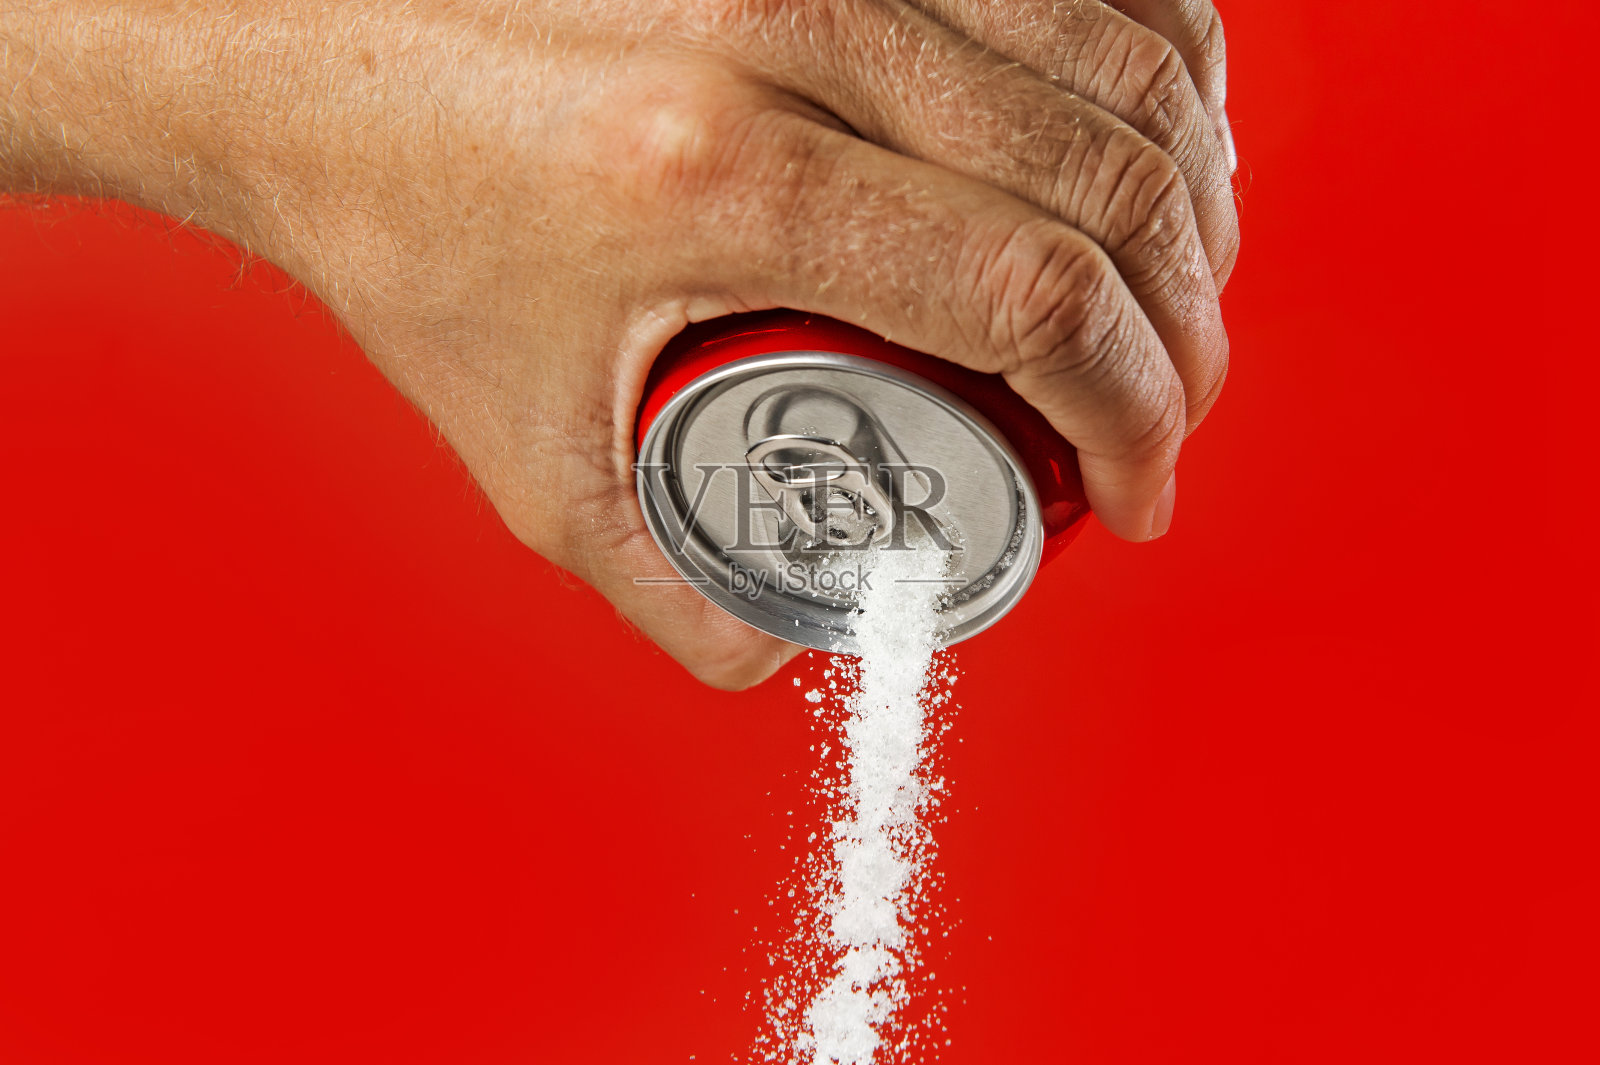 男士手捧提神饮料可以倒糖流中甜味和卡路里含量的苏打水和能量饮料的概念照片摄影图片